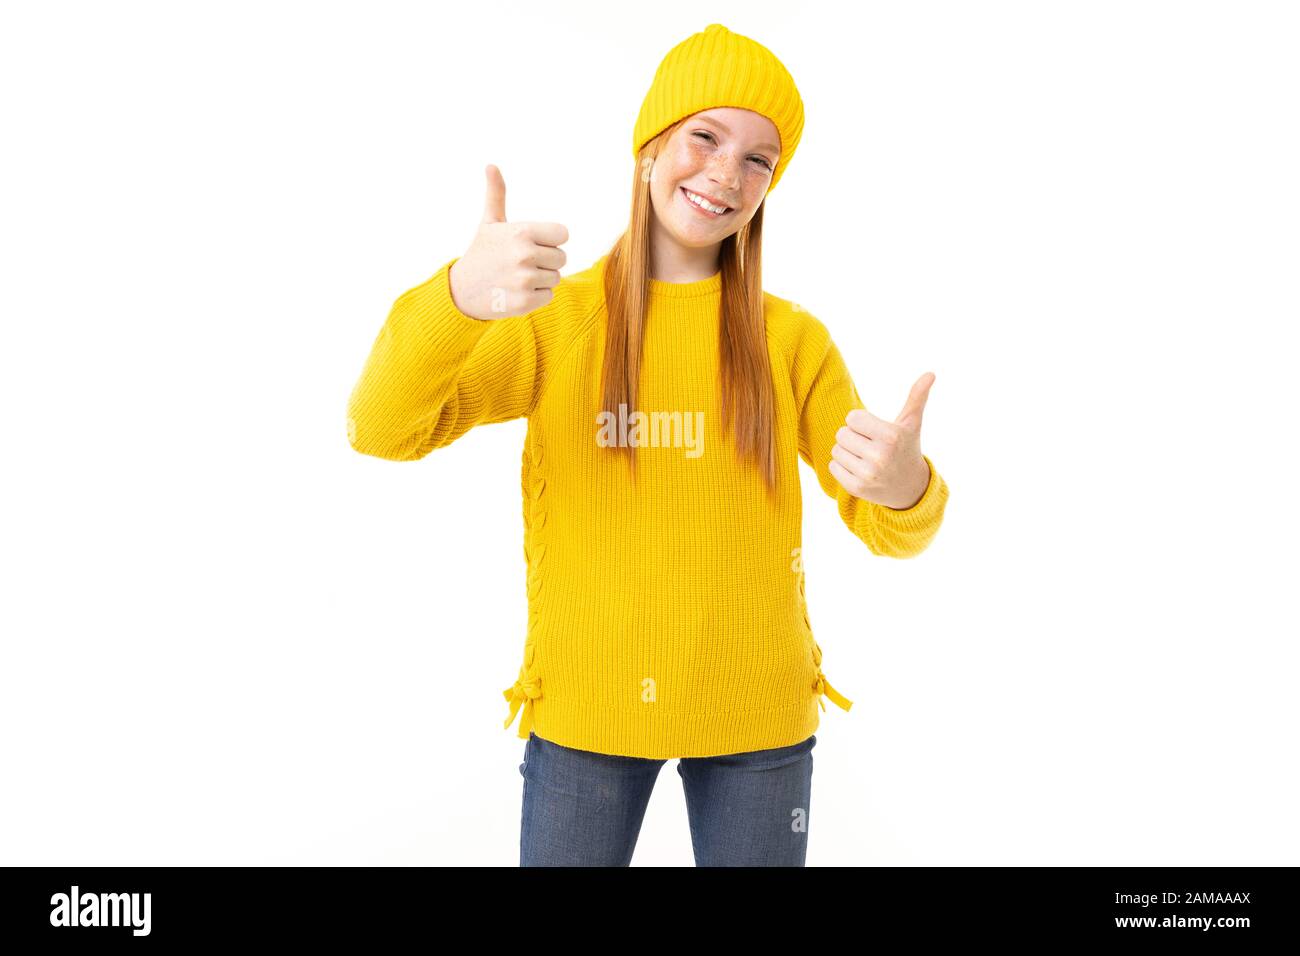 Fröhliches Teenager-Mädchen mit roten Haaren, gelbem Hoodie und Hose zeigt wie isoliert auf weißem Hintergrund. Stockfoto